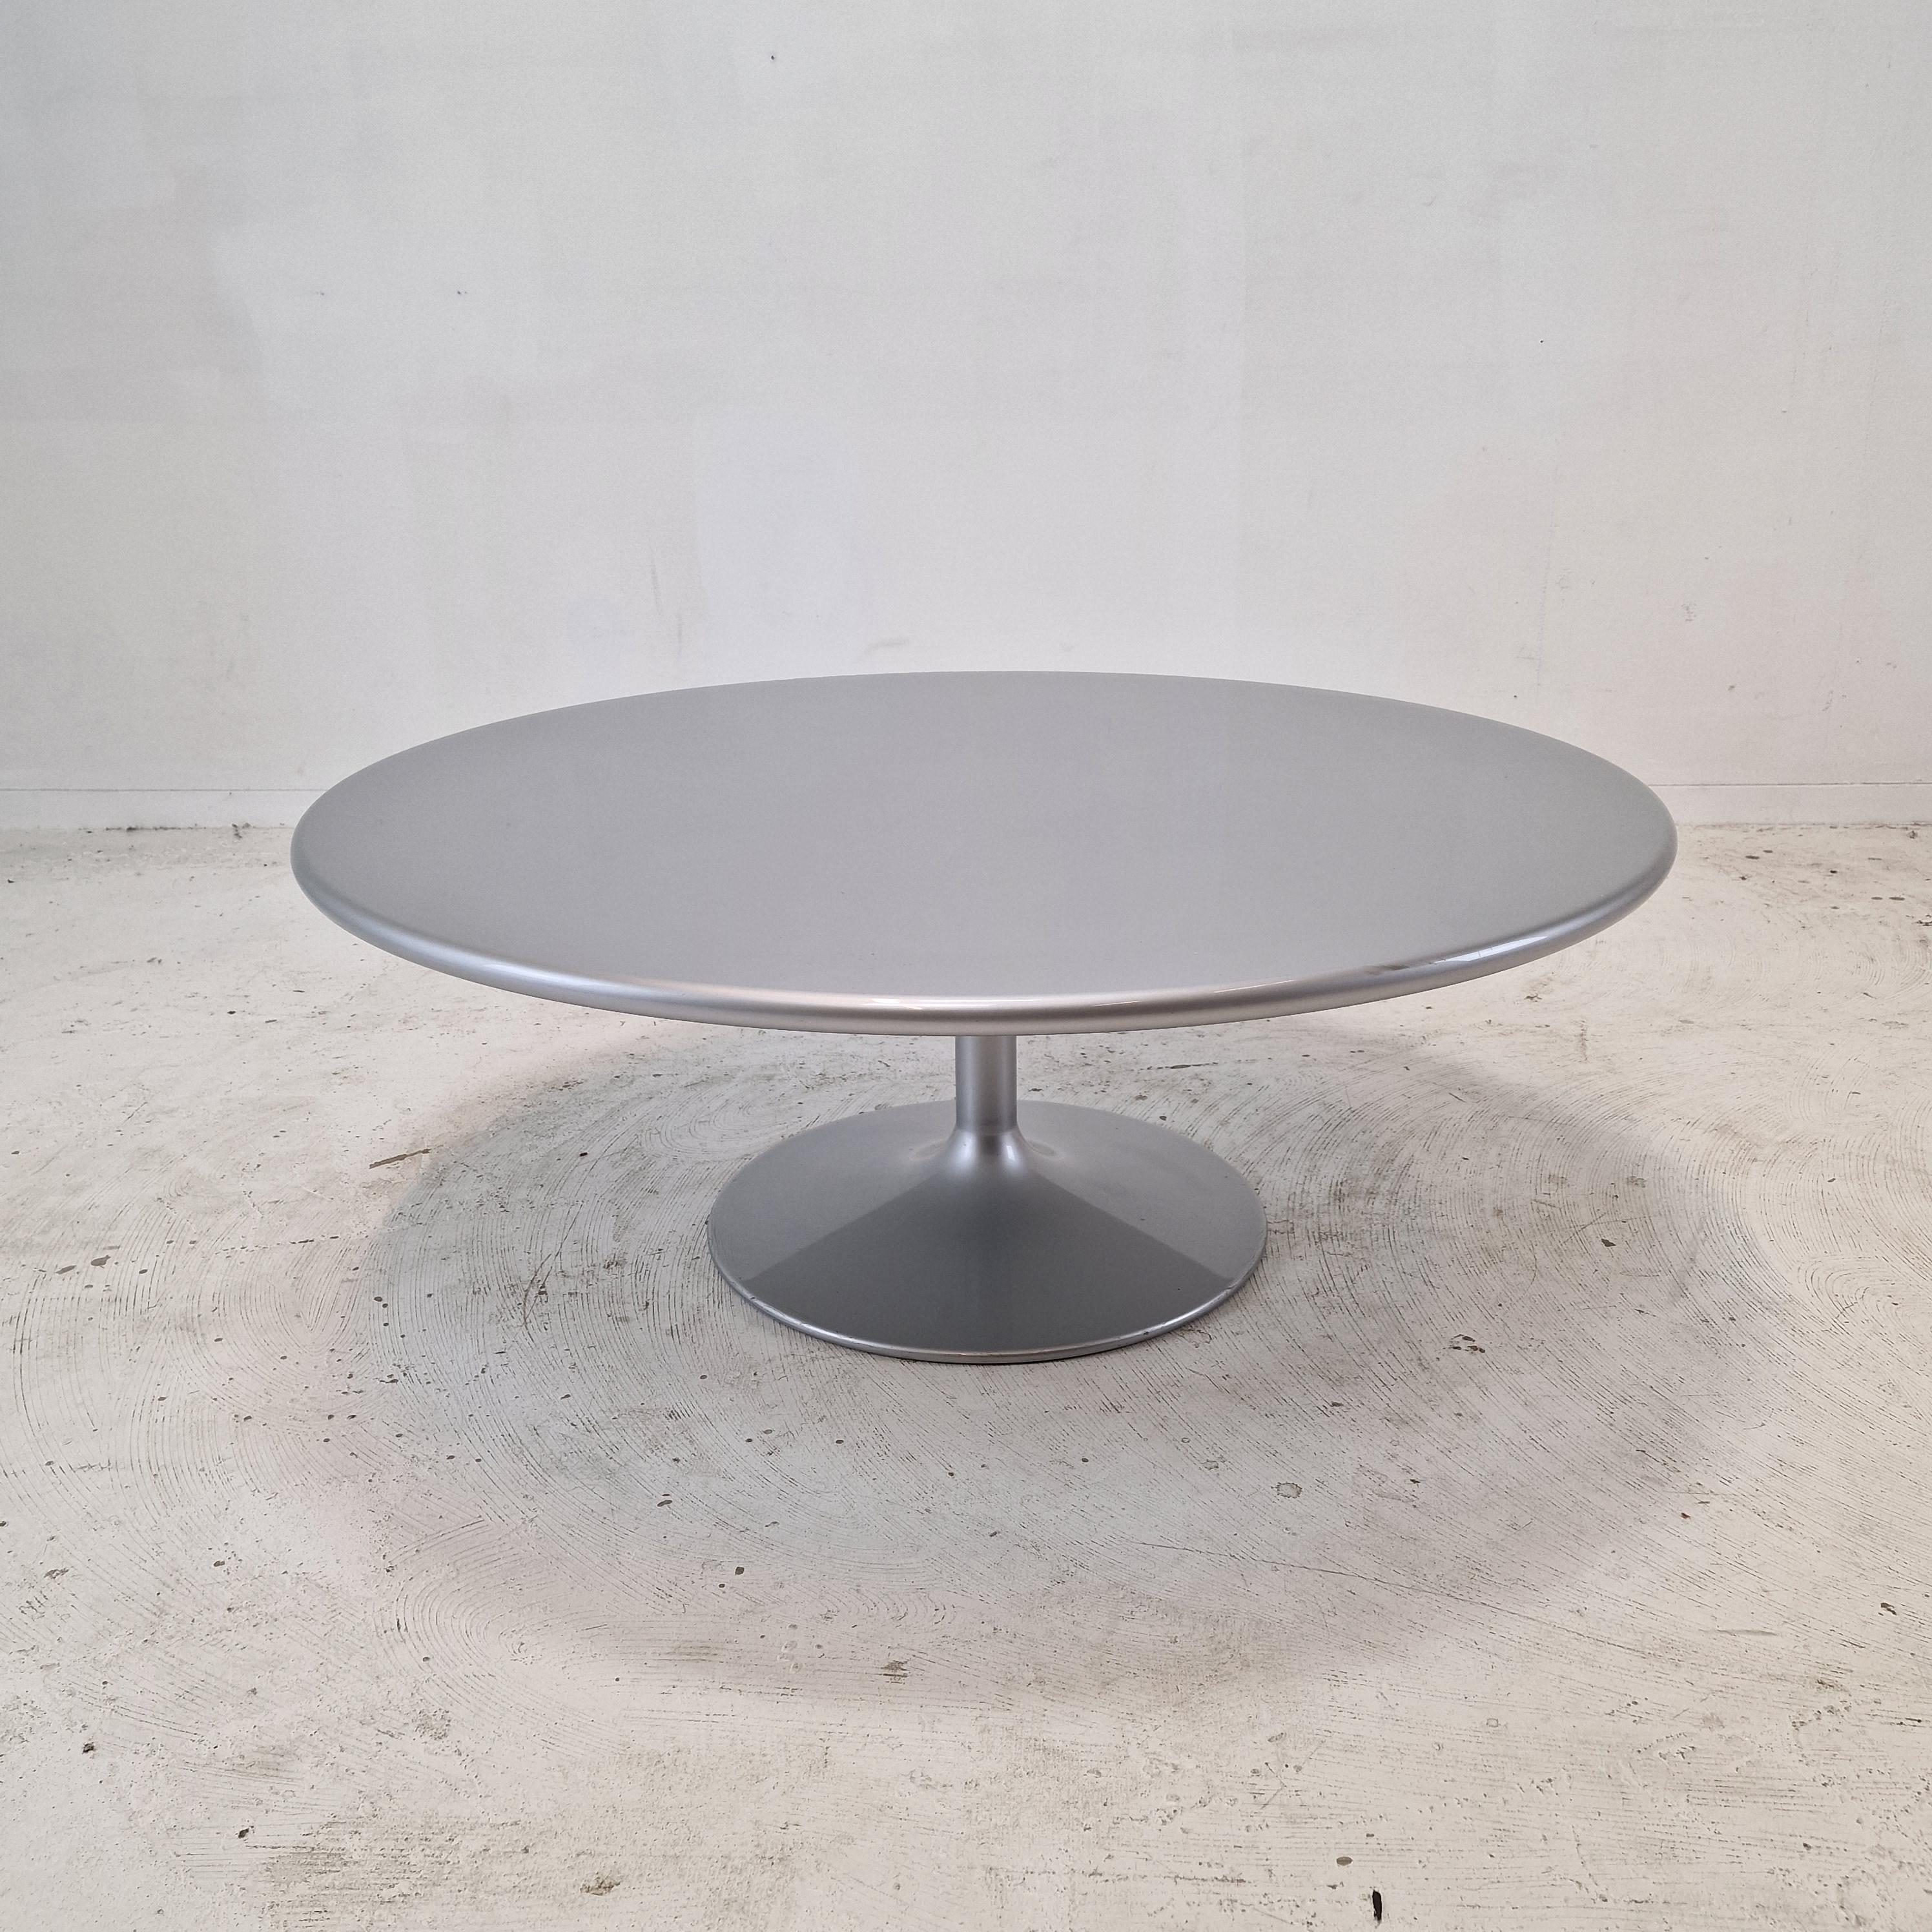 Très belle table basse ronde, conçue par Pierre Paulin dans les années 70. 
Le nom de la table est 